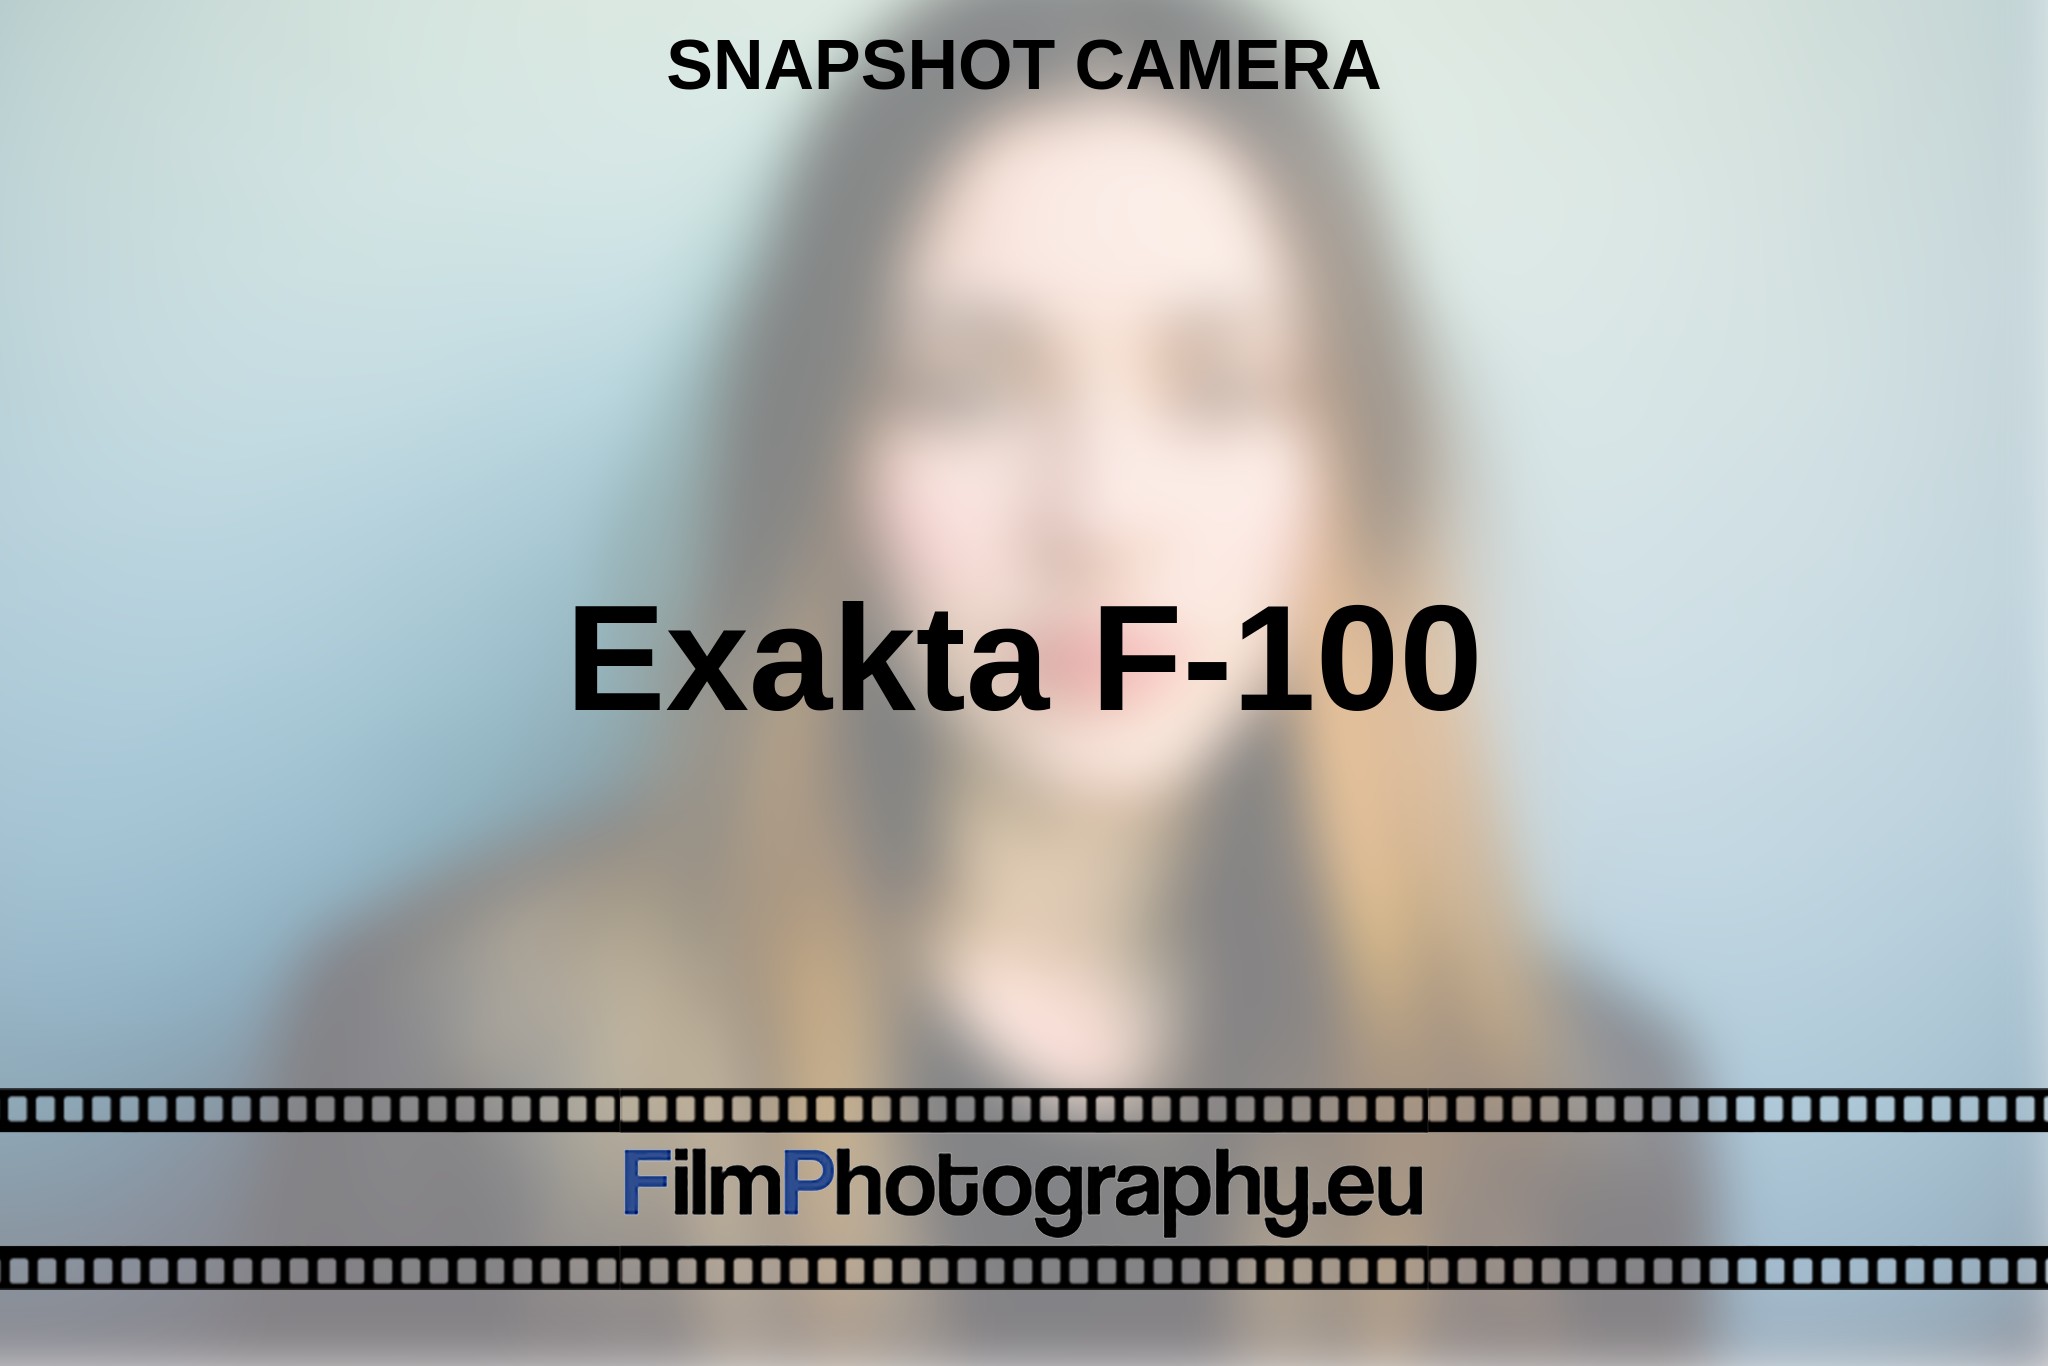 exakta-f-100-snapshot-camera-en-bnv.jpg